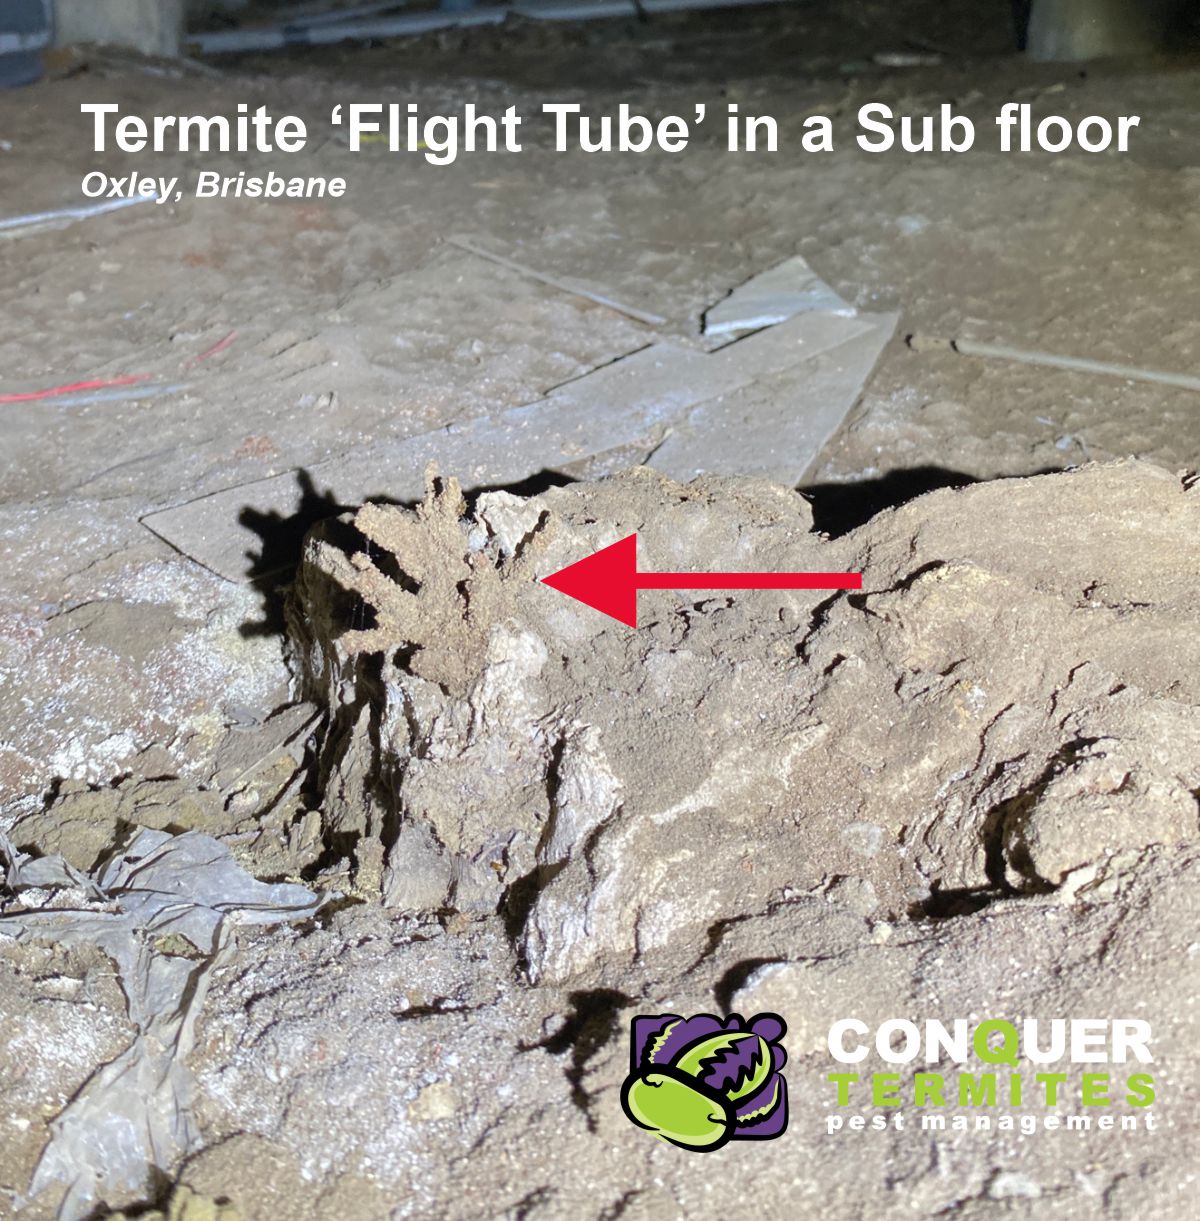 Termites love Sub-floors